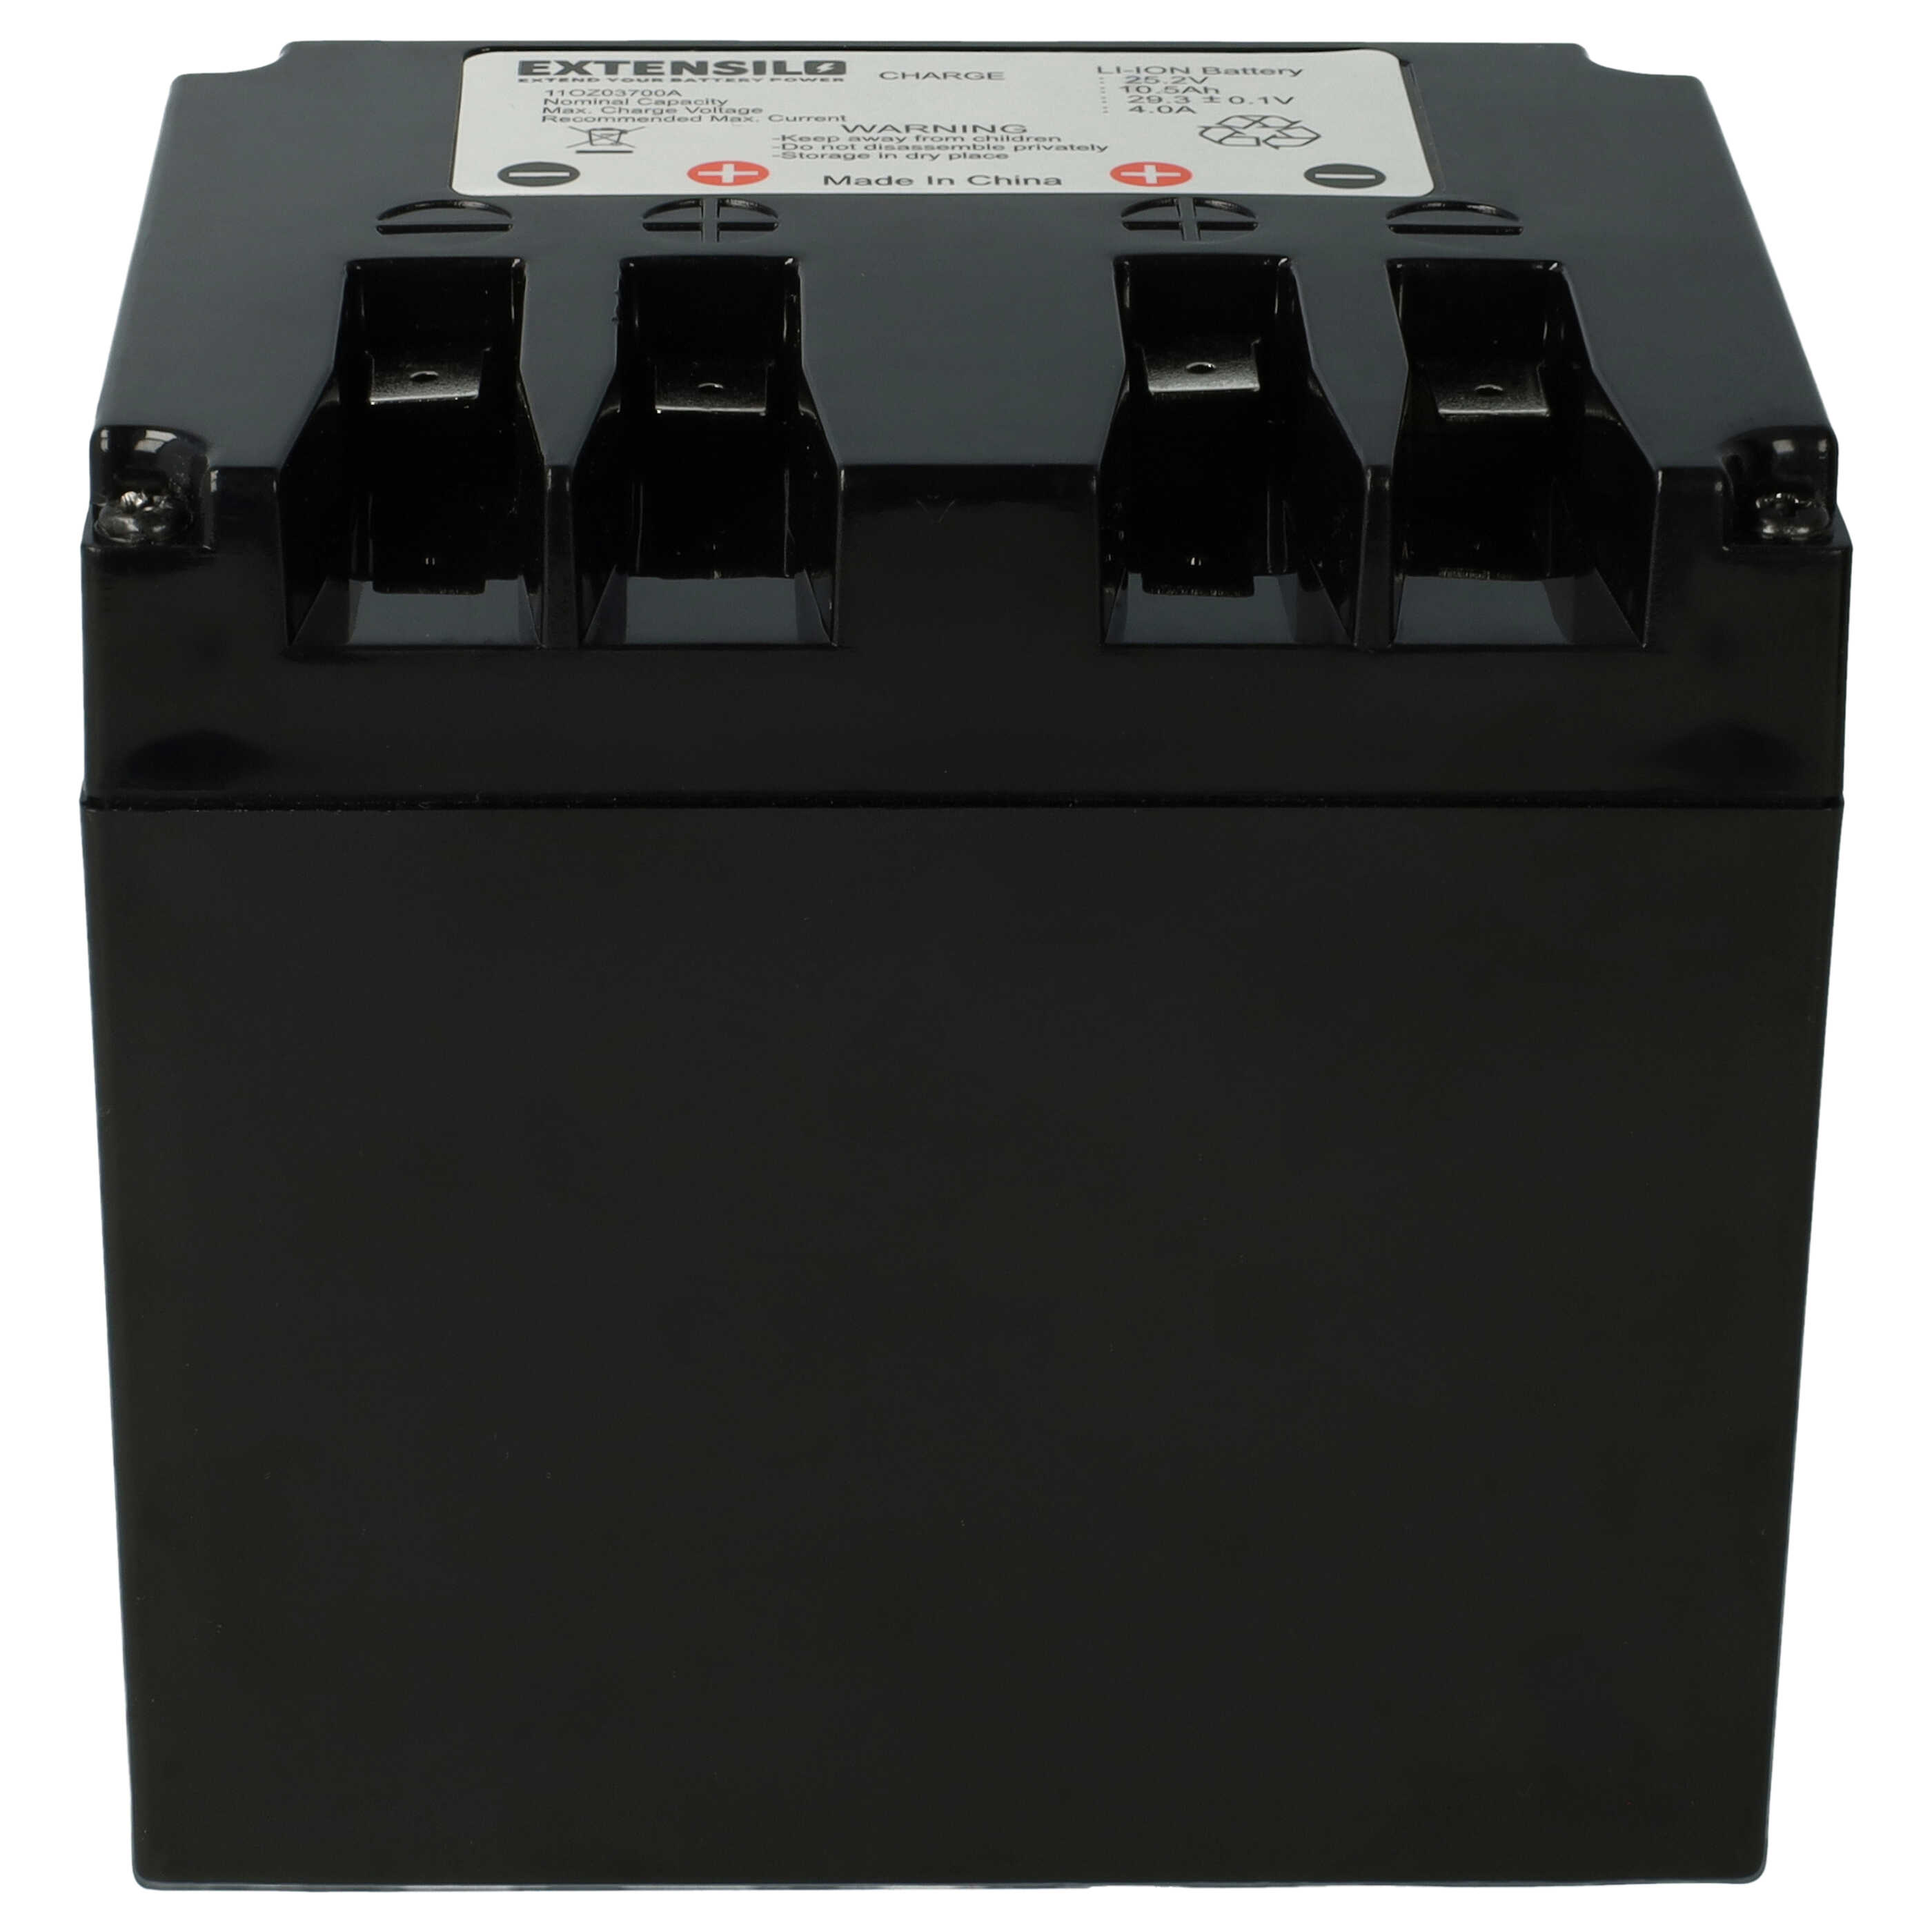 Akumulator do robota koszącego zamiennik Zucchetti typ B, 110Z03700A - 10500 mAh 25,2 V Li-Ion